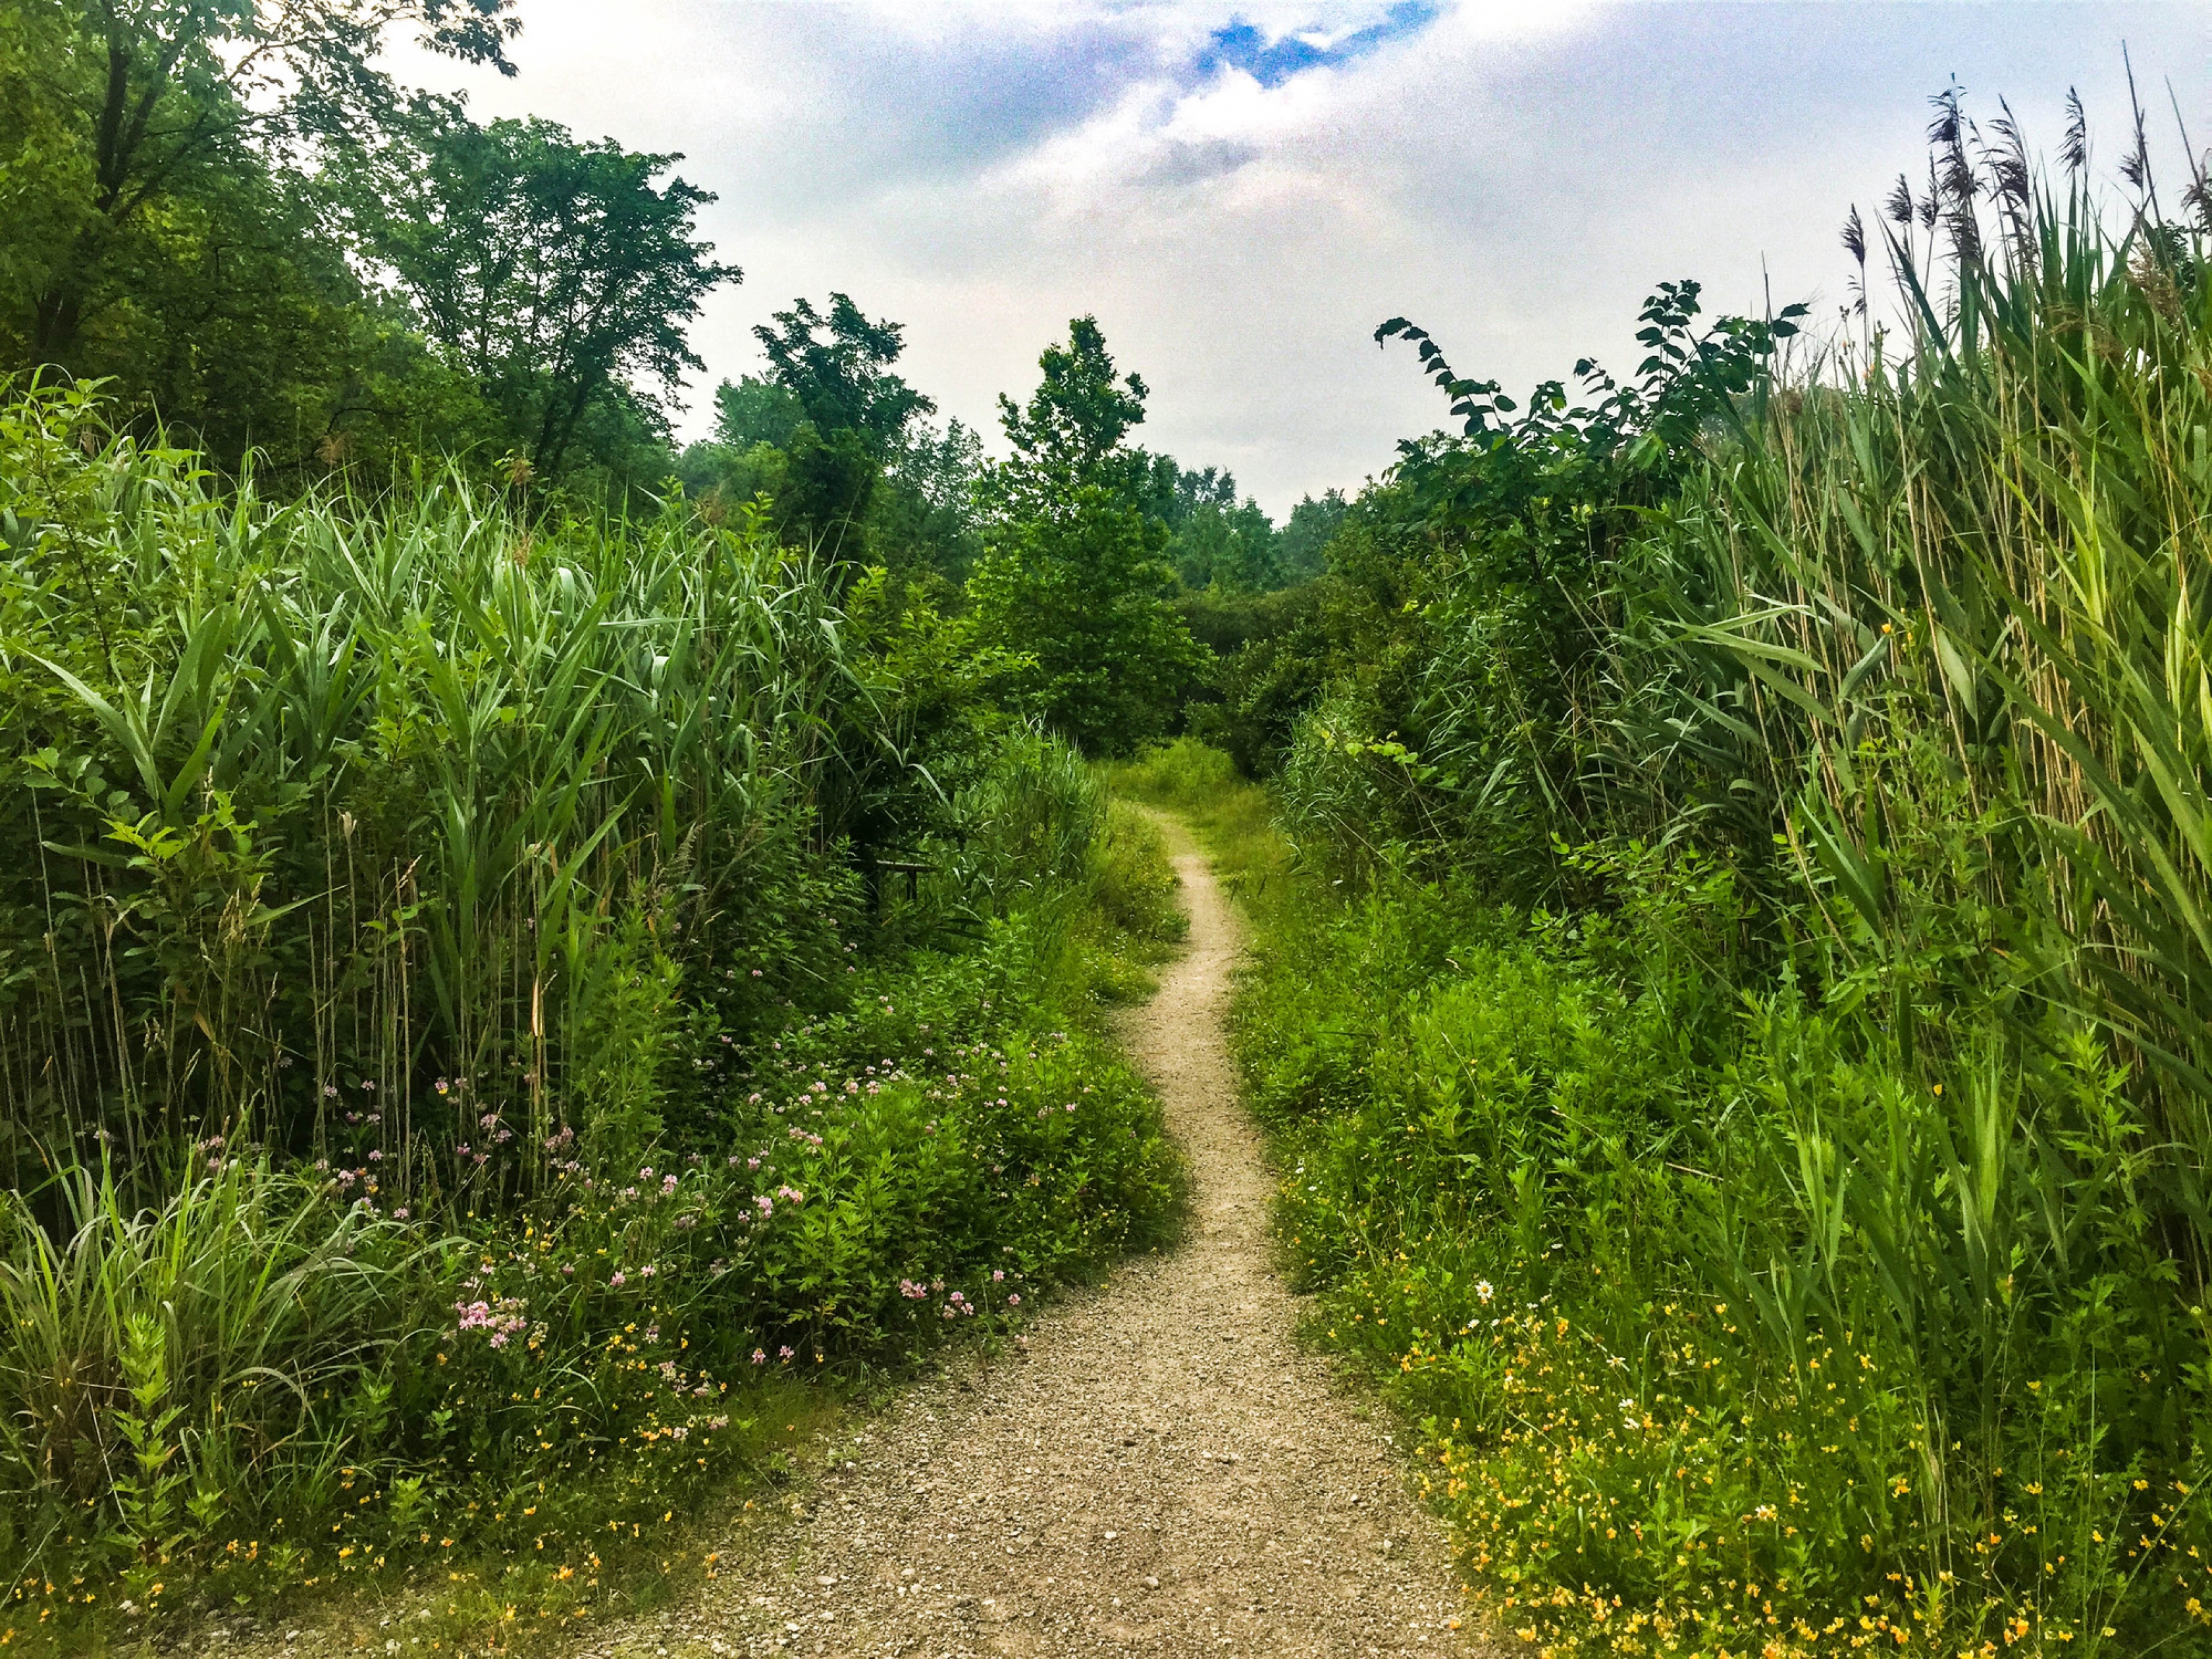 Trail through tall grass